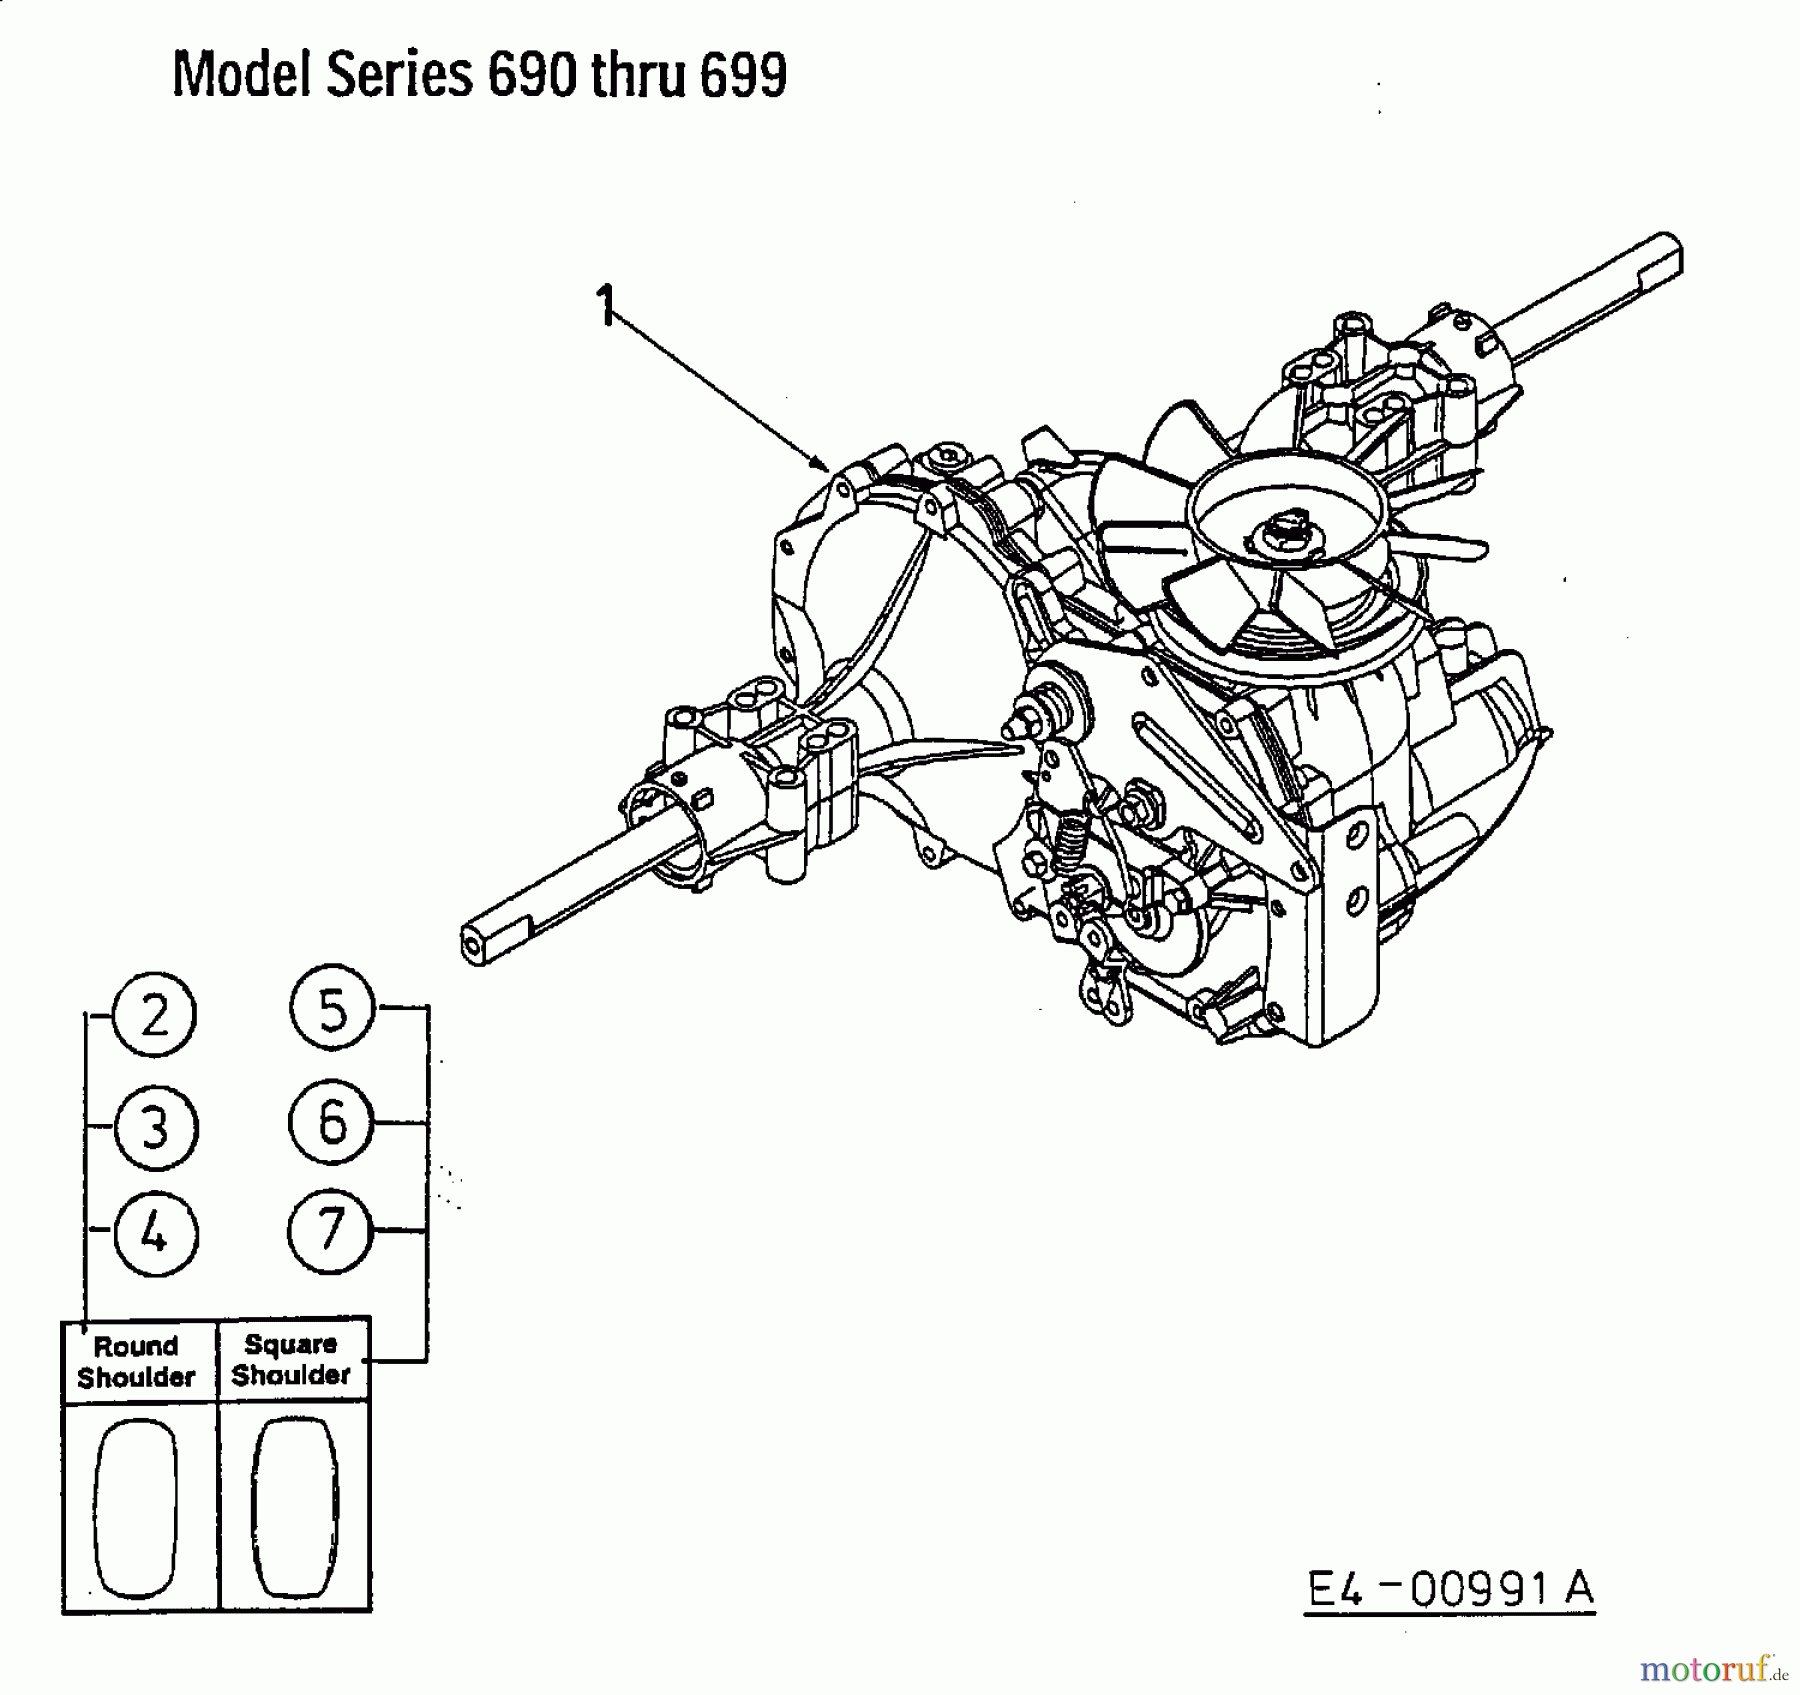  MTD Lawn tractors H/165 13AO698G678  (2002) Hydrostatic gearbox, Rear wheels